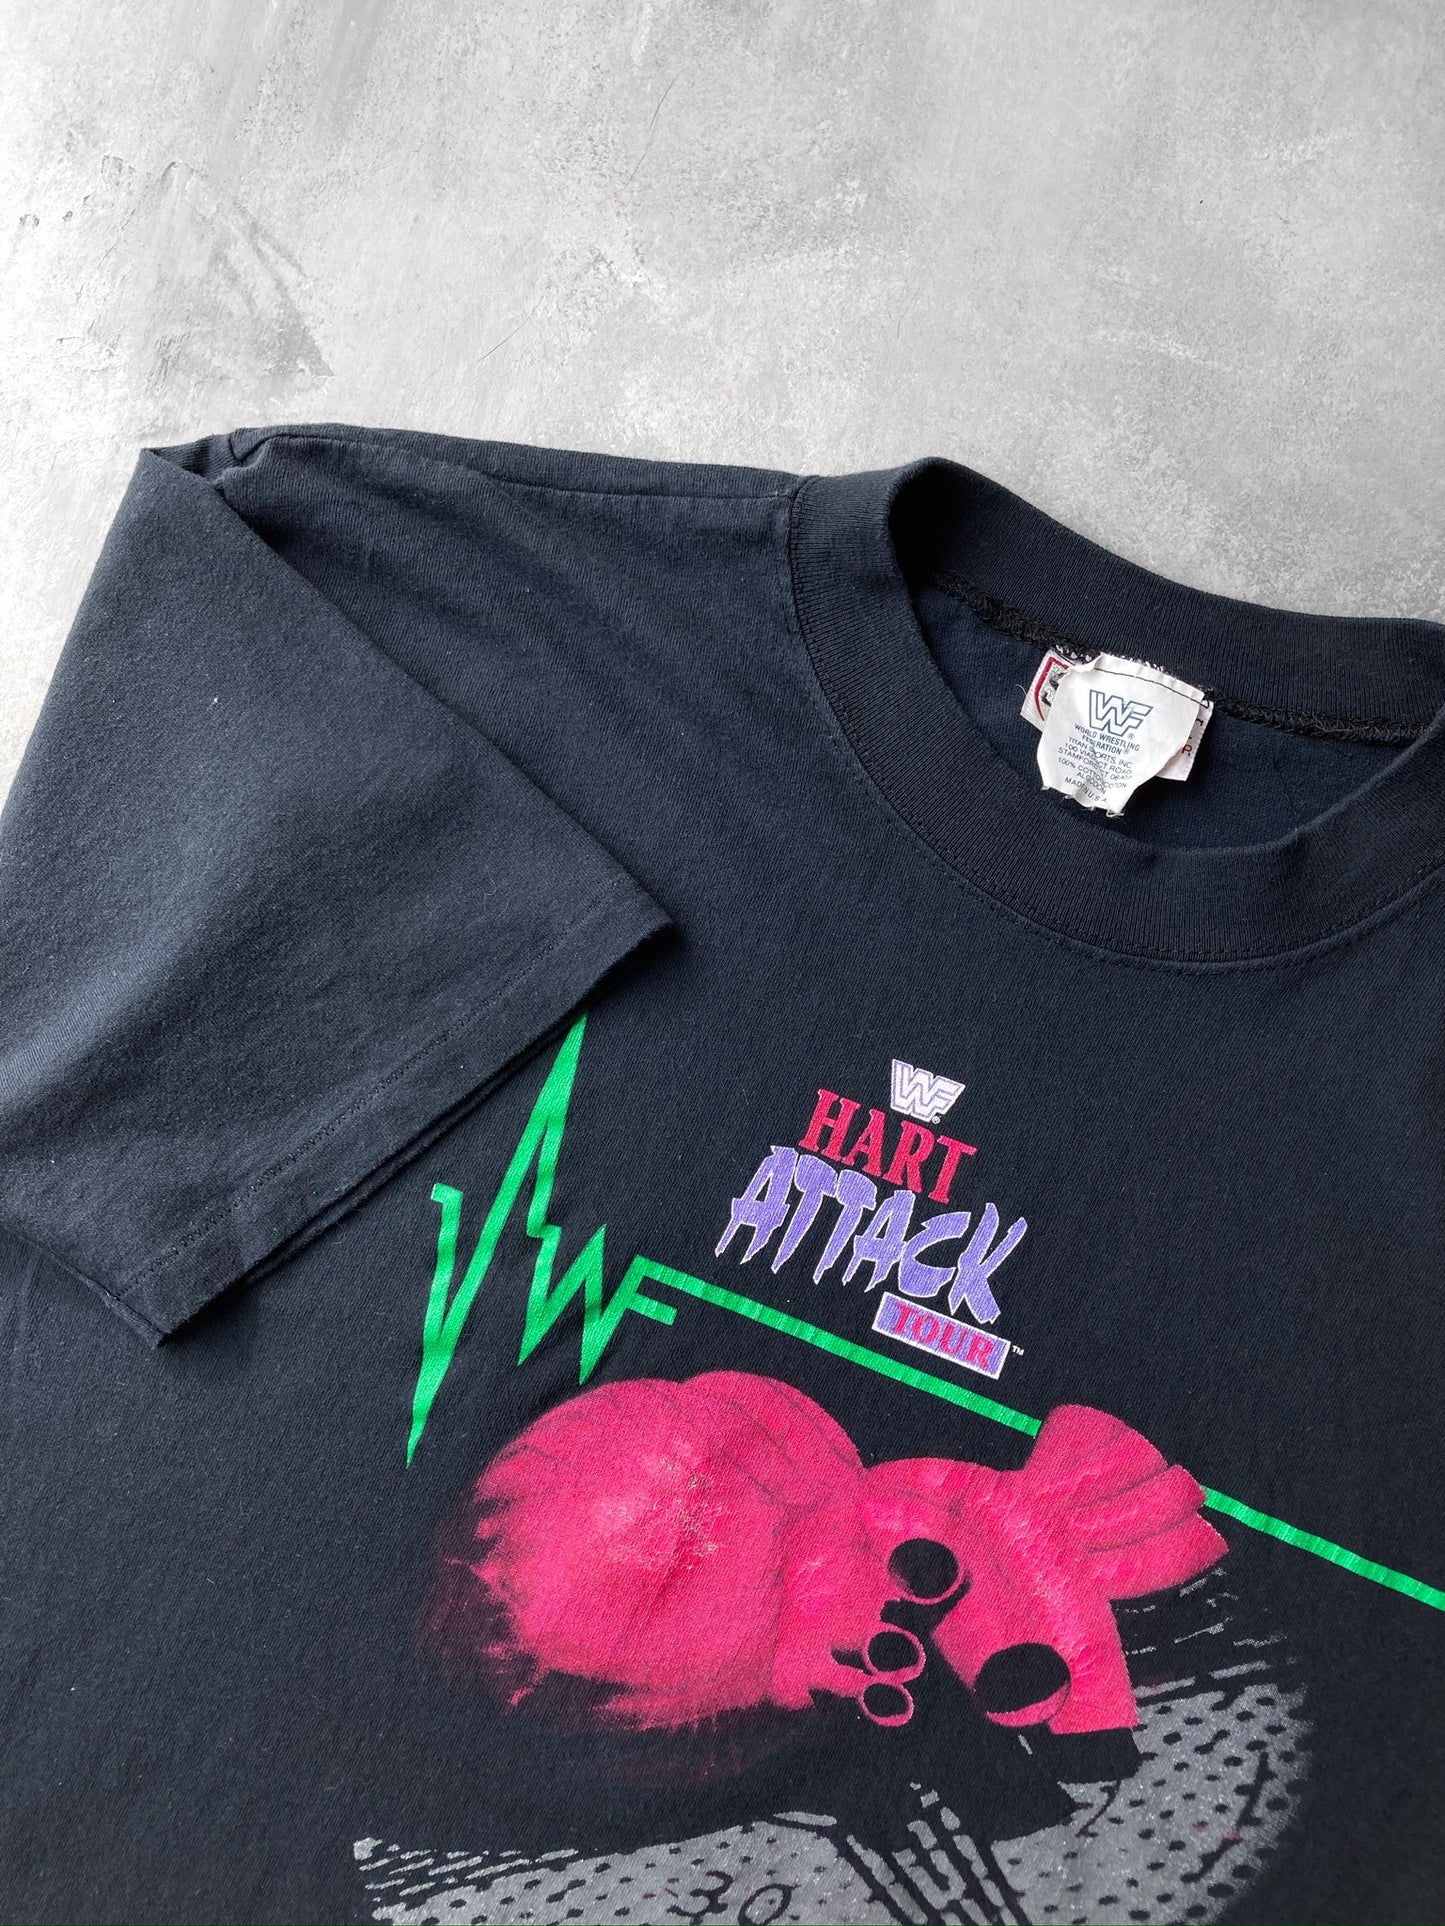 WWF Hart Attack Tour T-Shirt '94 - XL